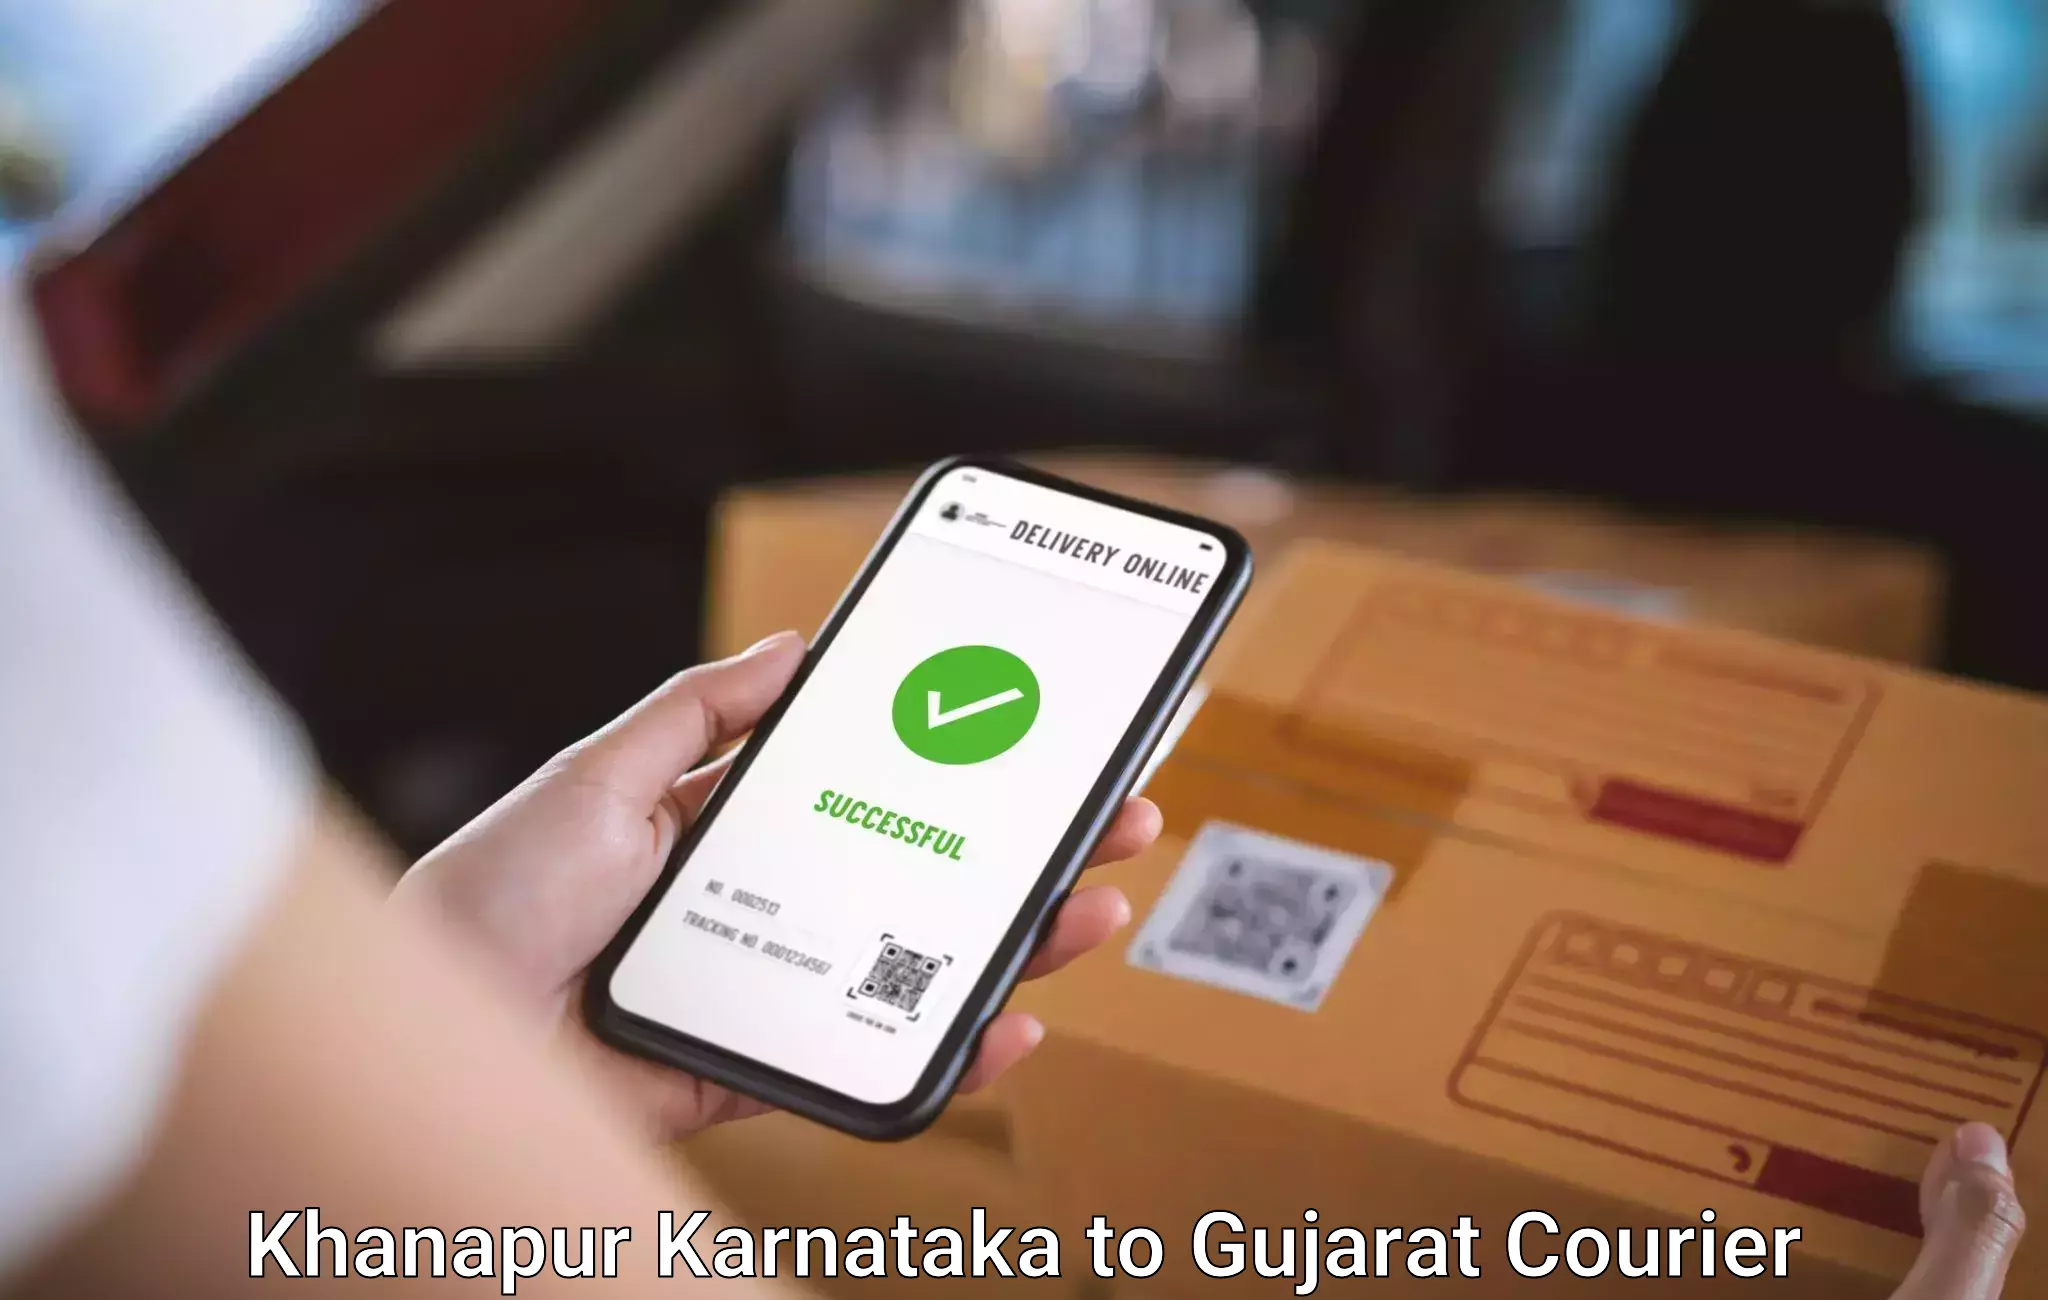 Excess baggage transport Khanapur Karnataka to Gujarat